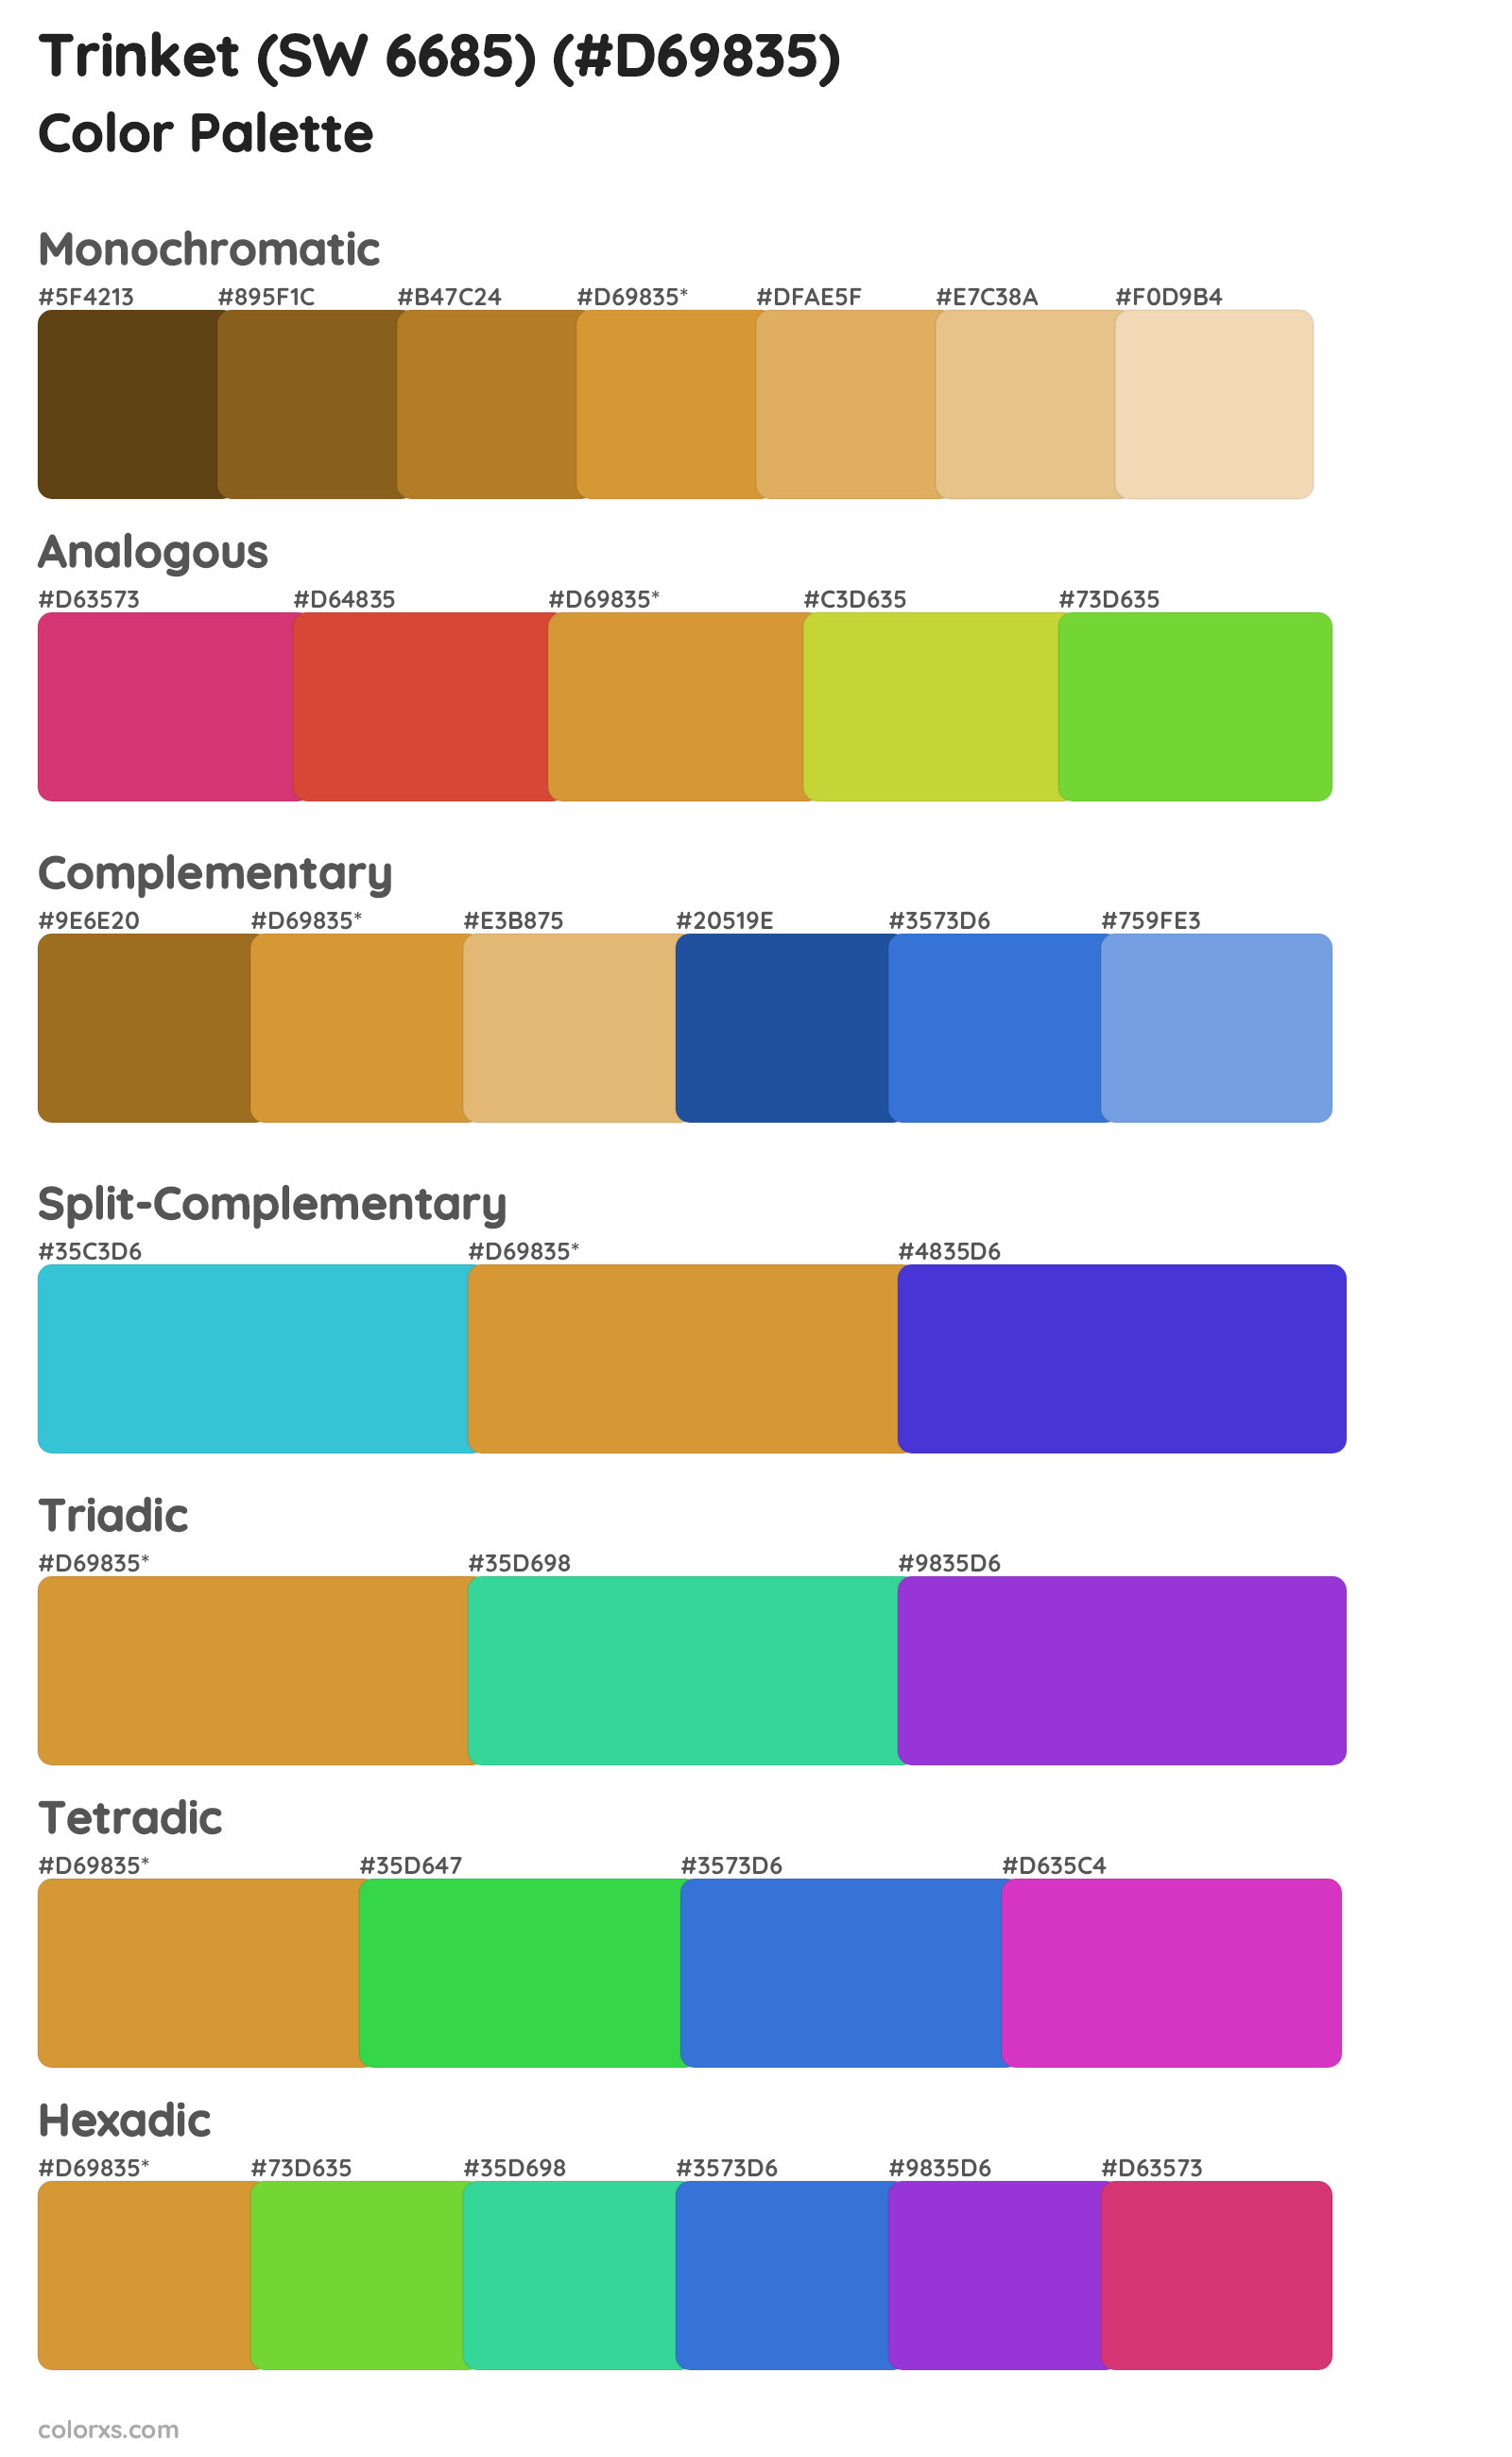 Trinket (SW 6685) Color Scheme Palettes